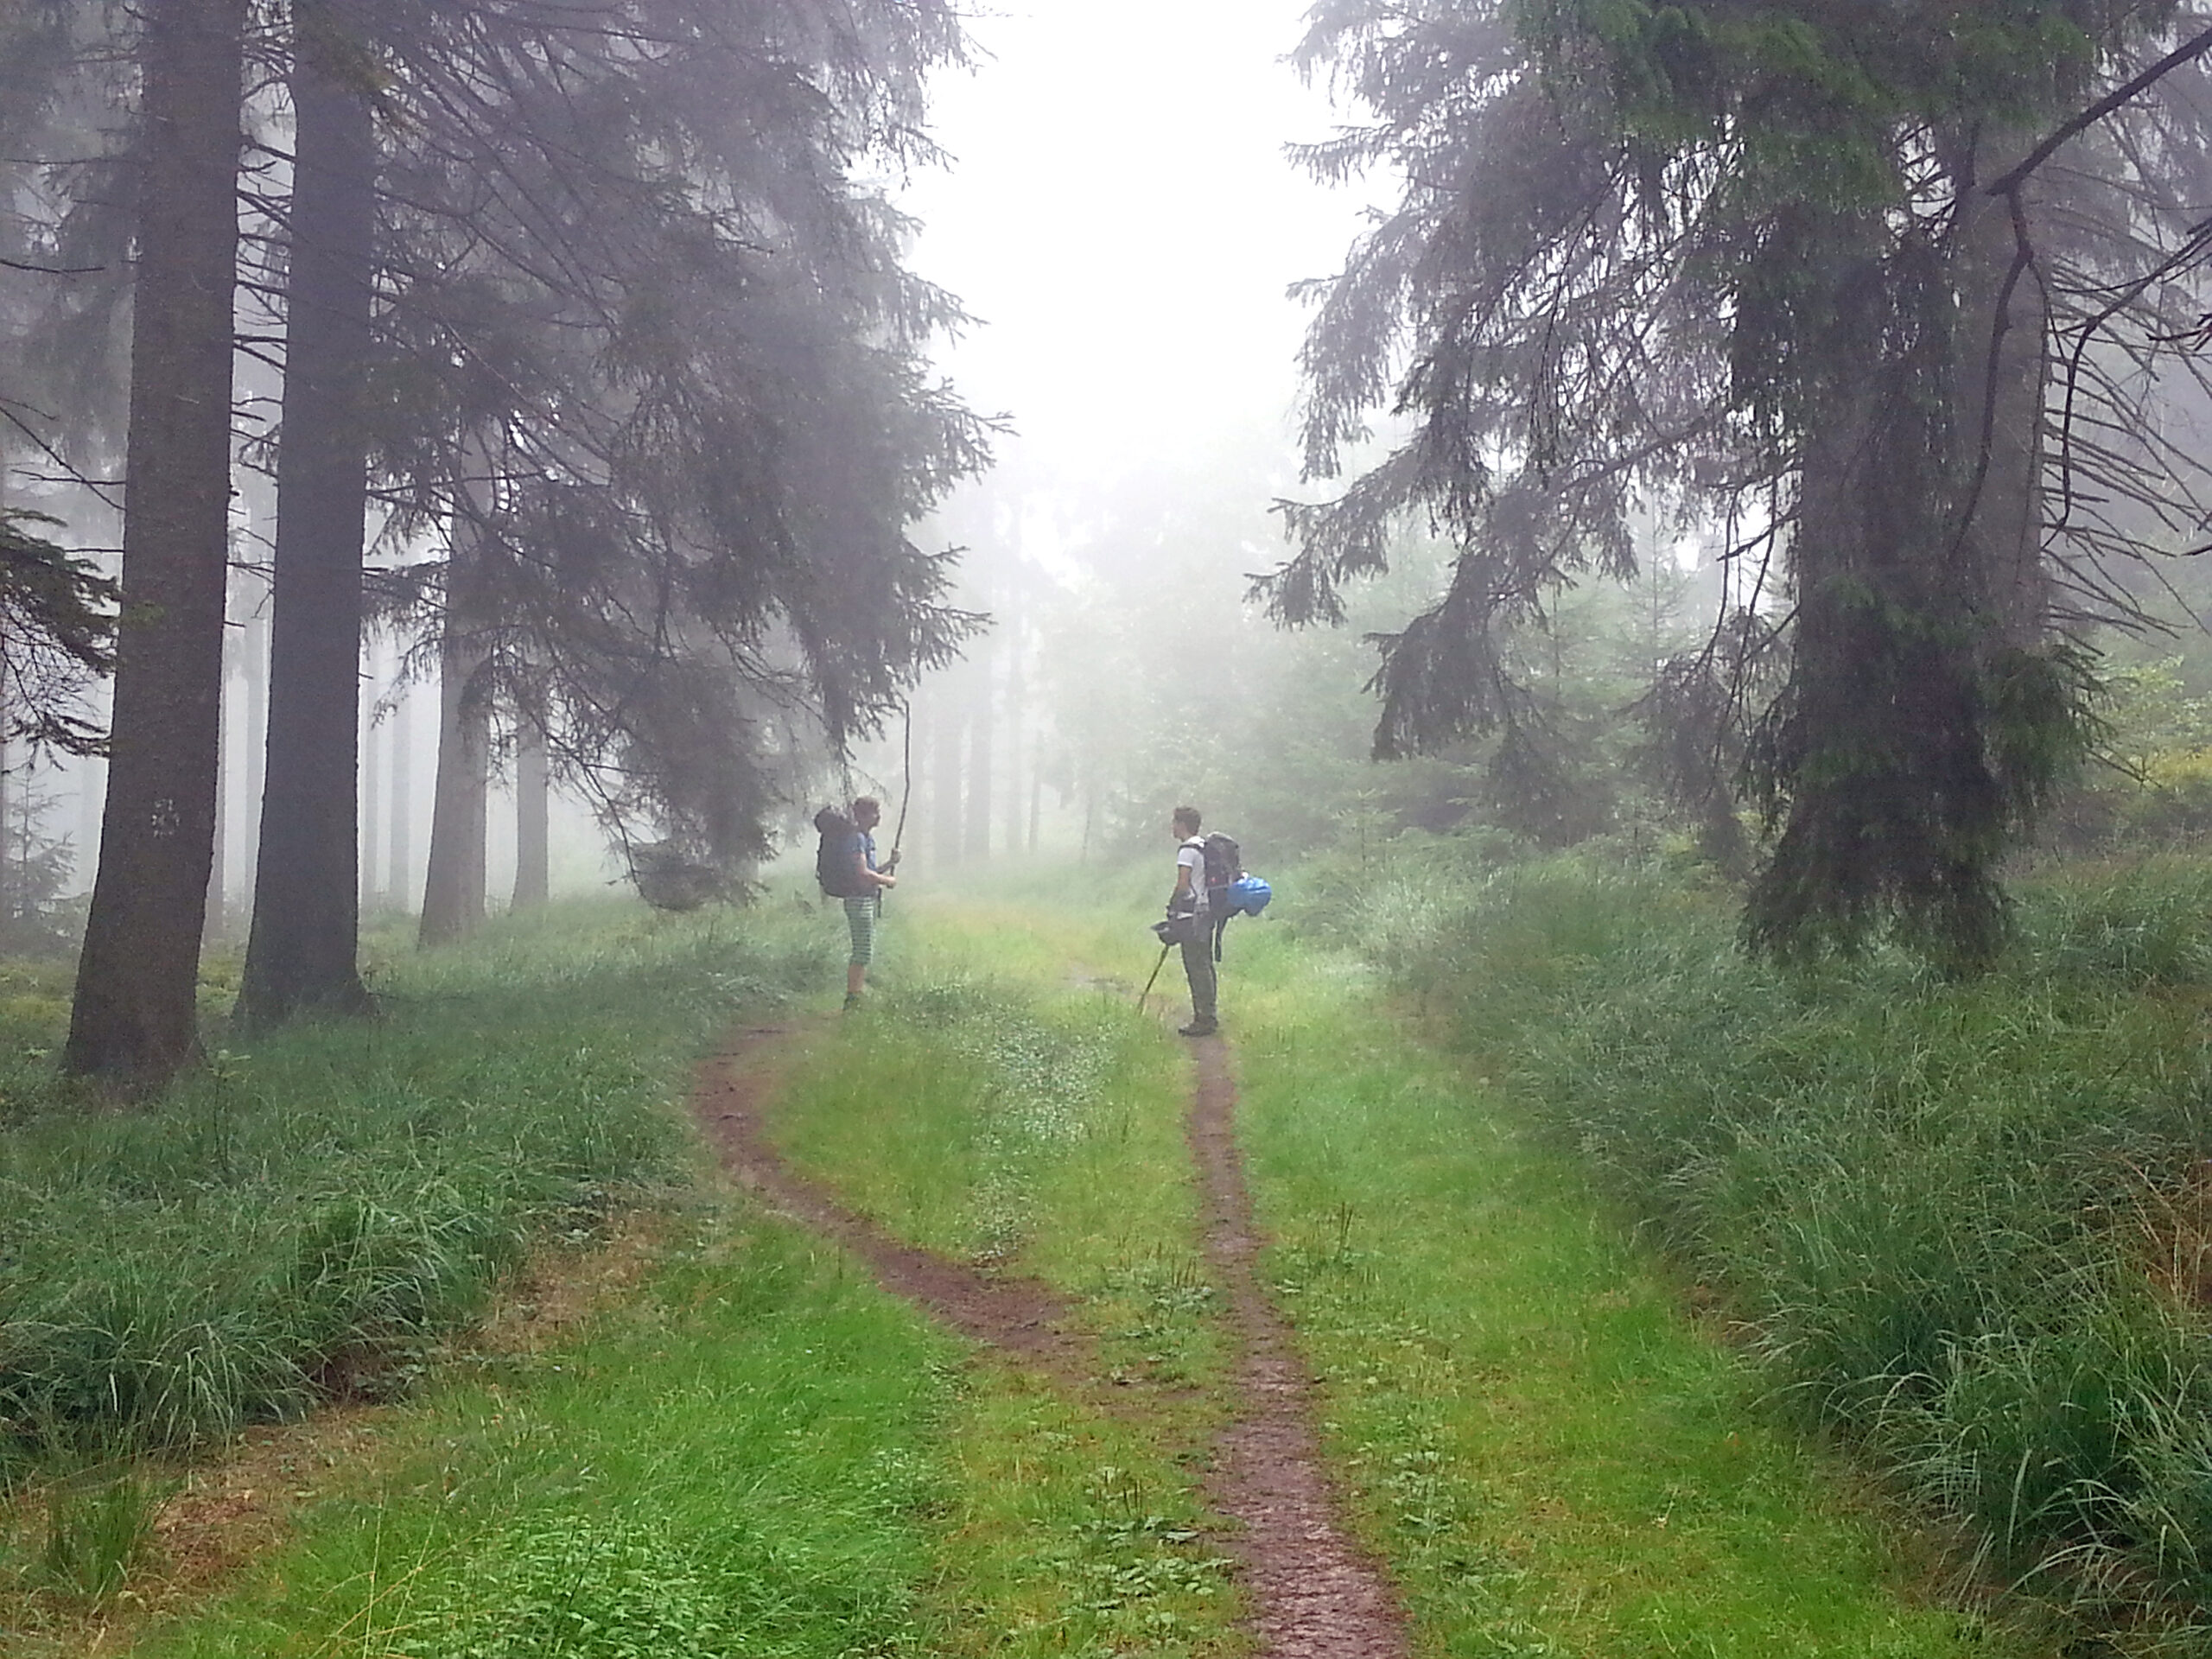 Zwei Menschen stehen auf einem Waldweg, um sie herum stehen dichte Nadelbäume und Nebel hängt in der Luft